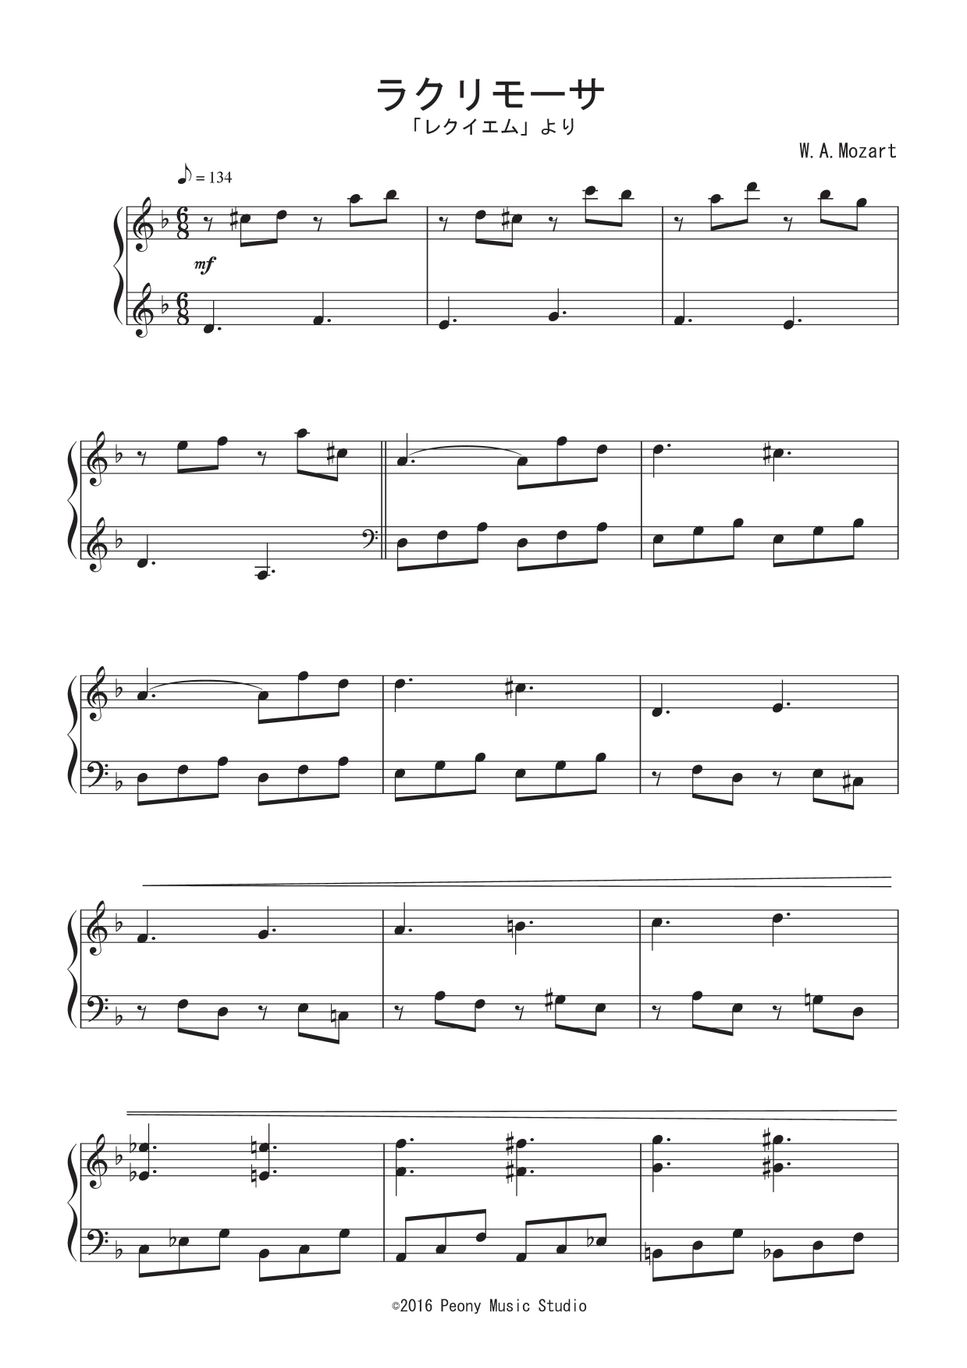 W.A.モーツァルト - 「レクイエム」より ラクリモーサ 楽譜 by Peony